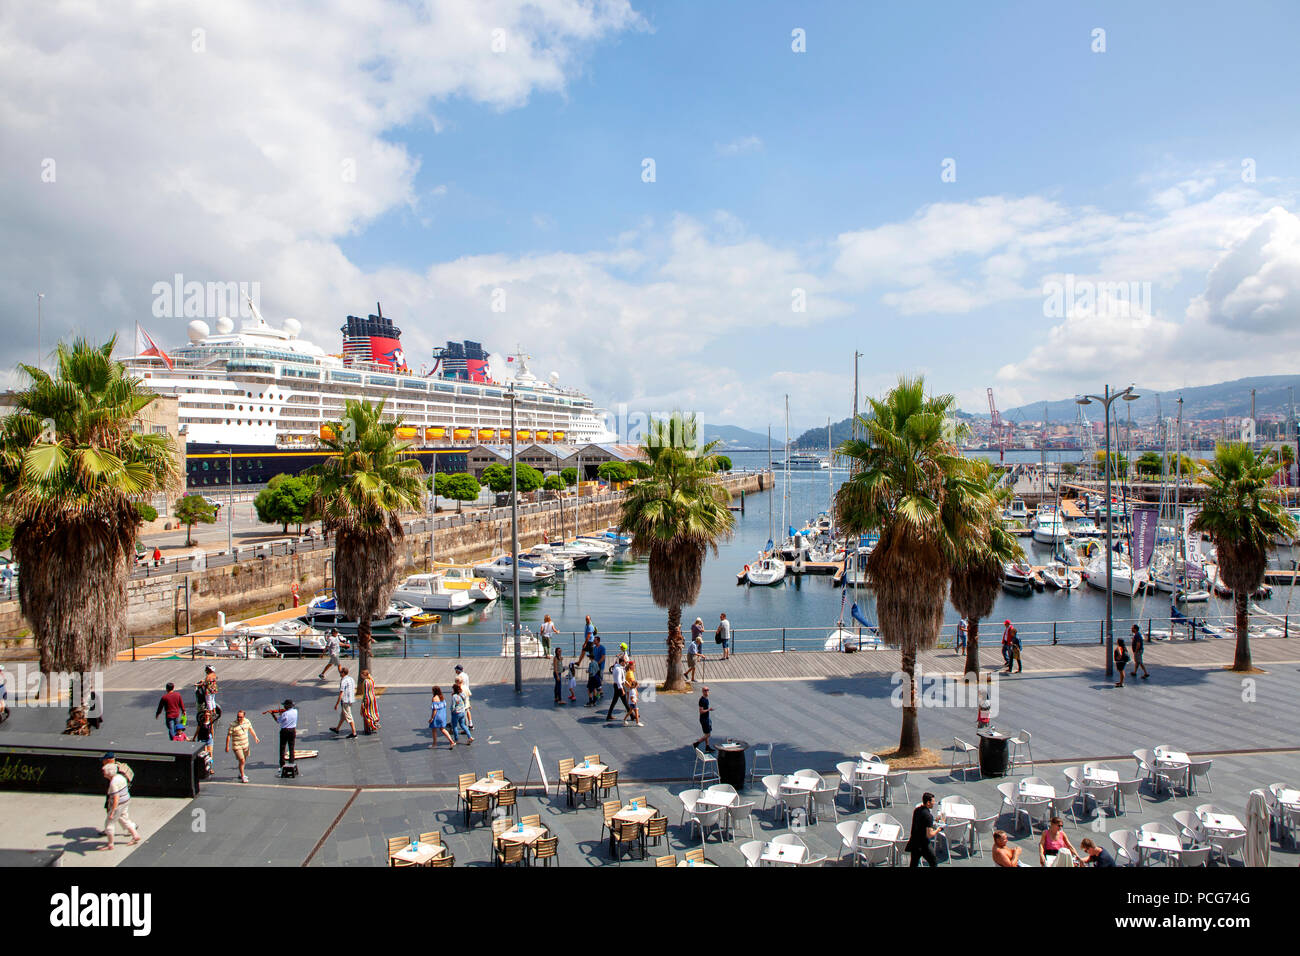 The Port of Vigo, Galicia, Spain Stock Photo